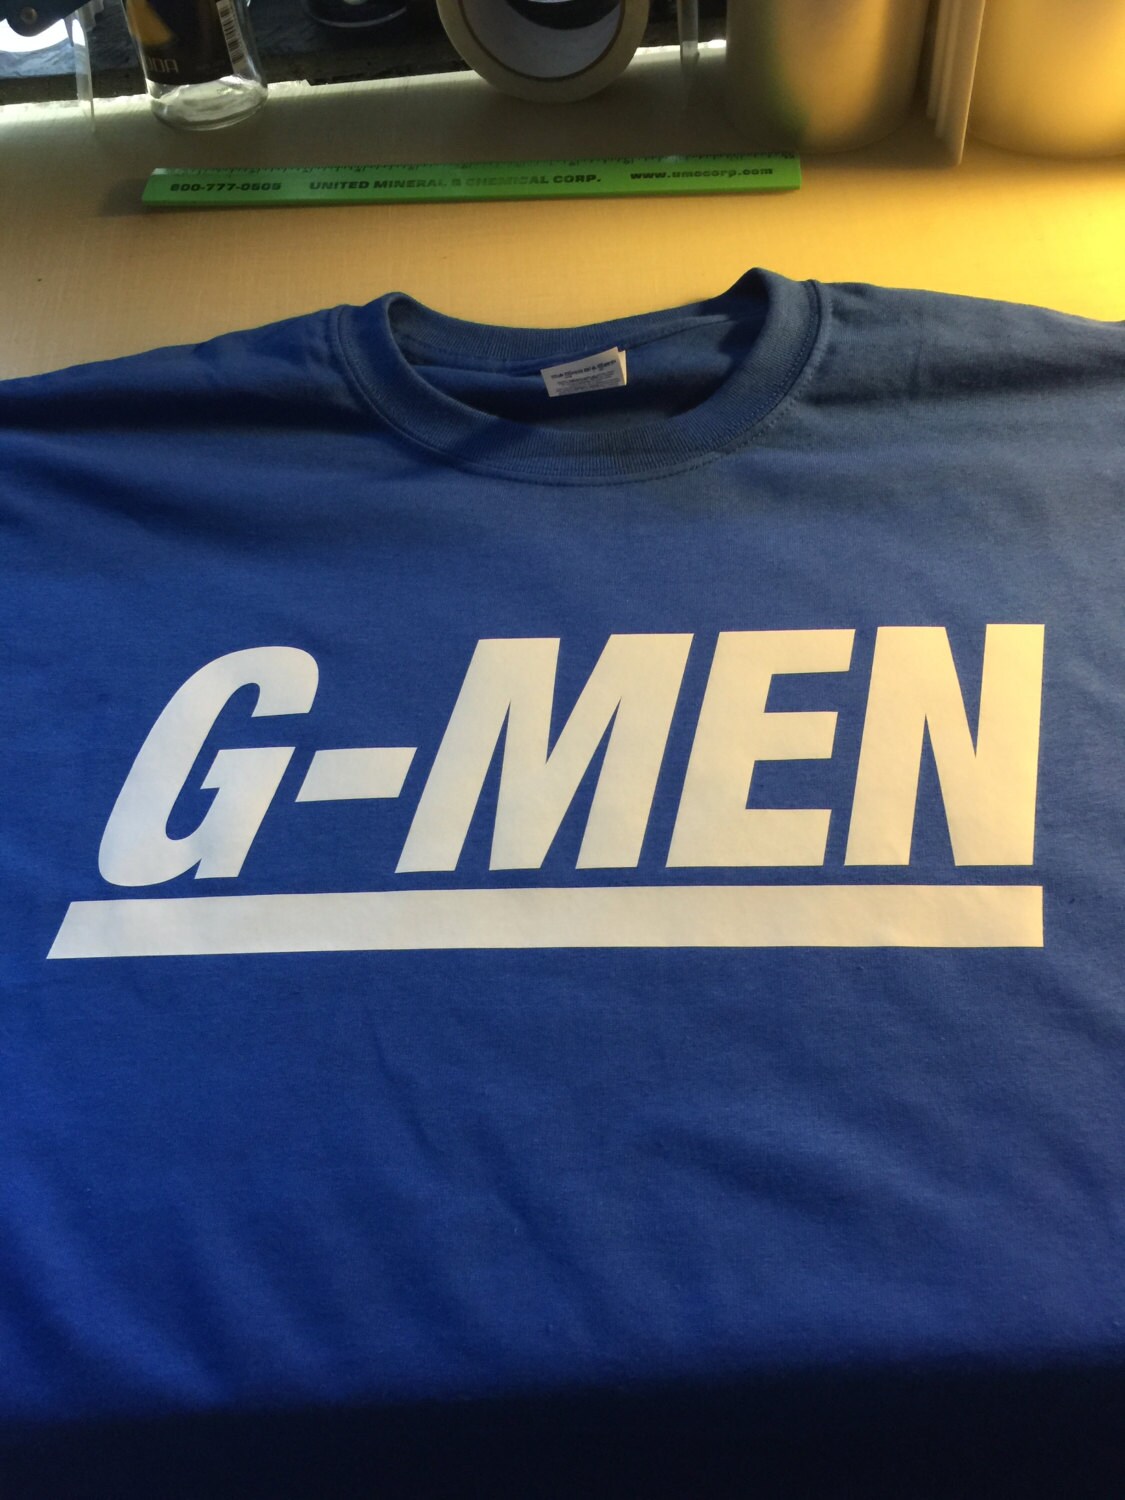 new york giants custom t shirt